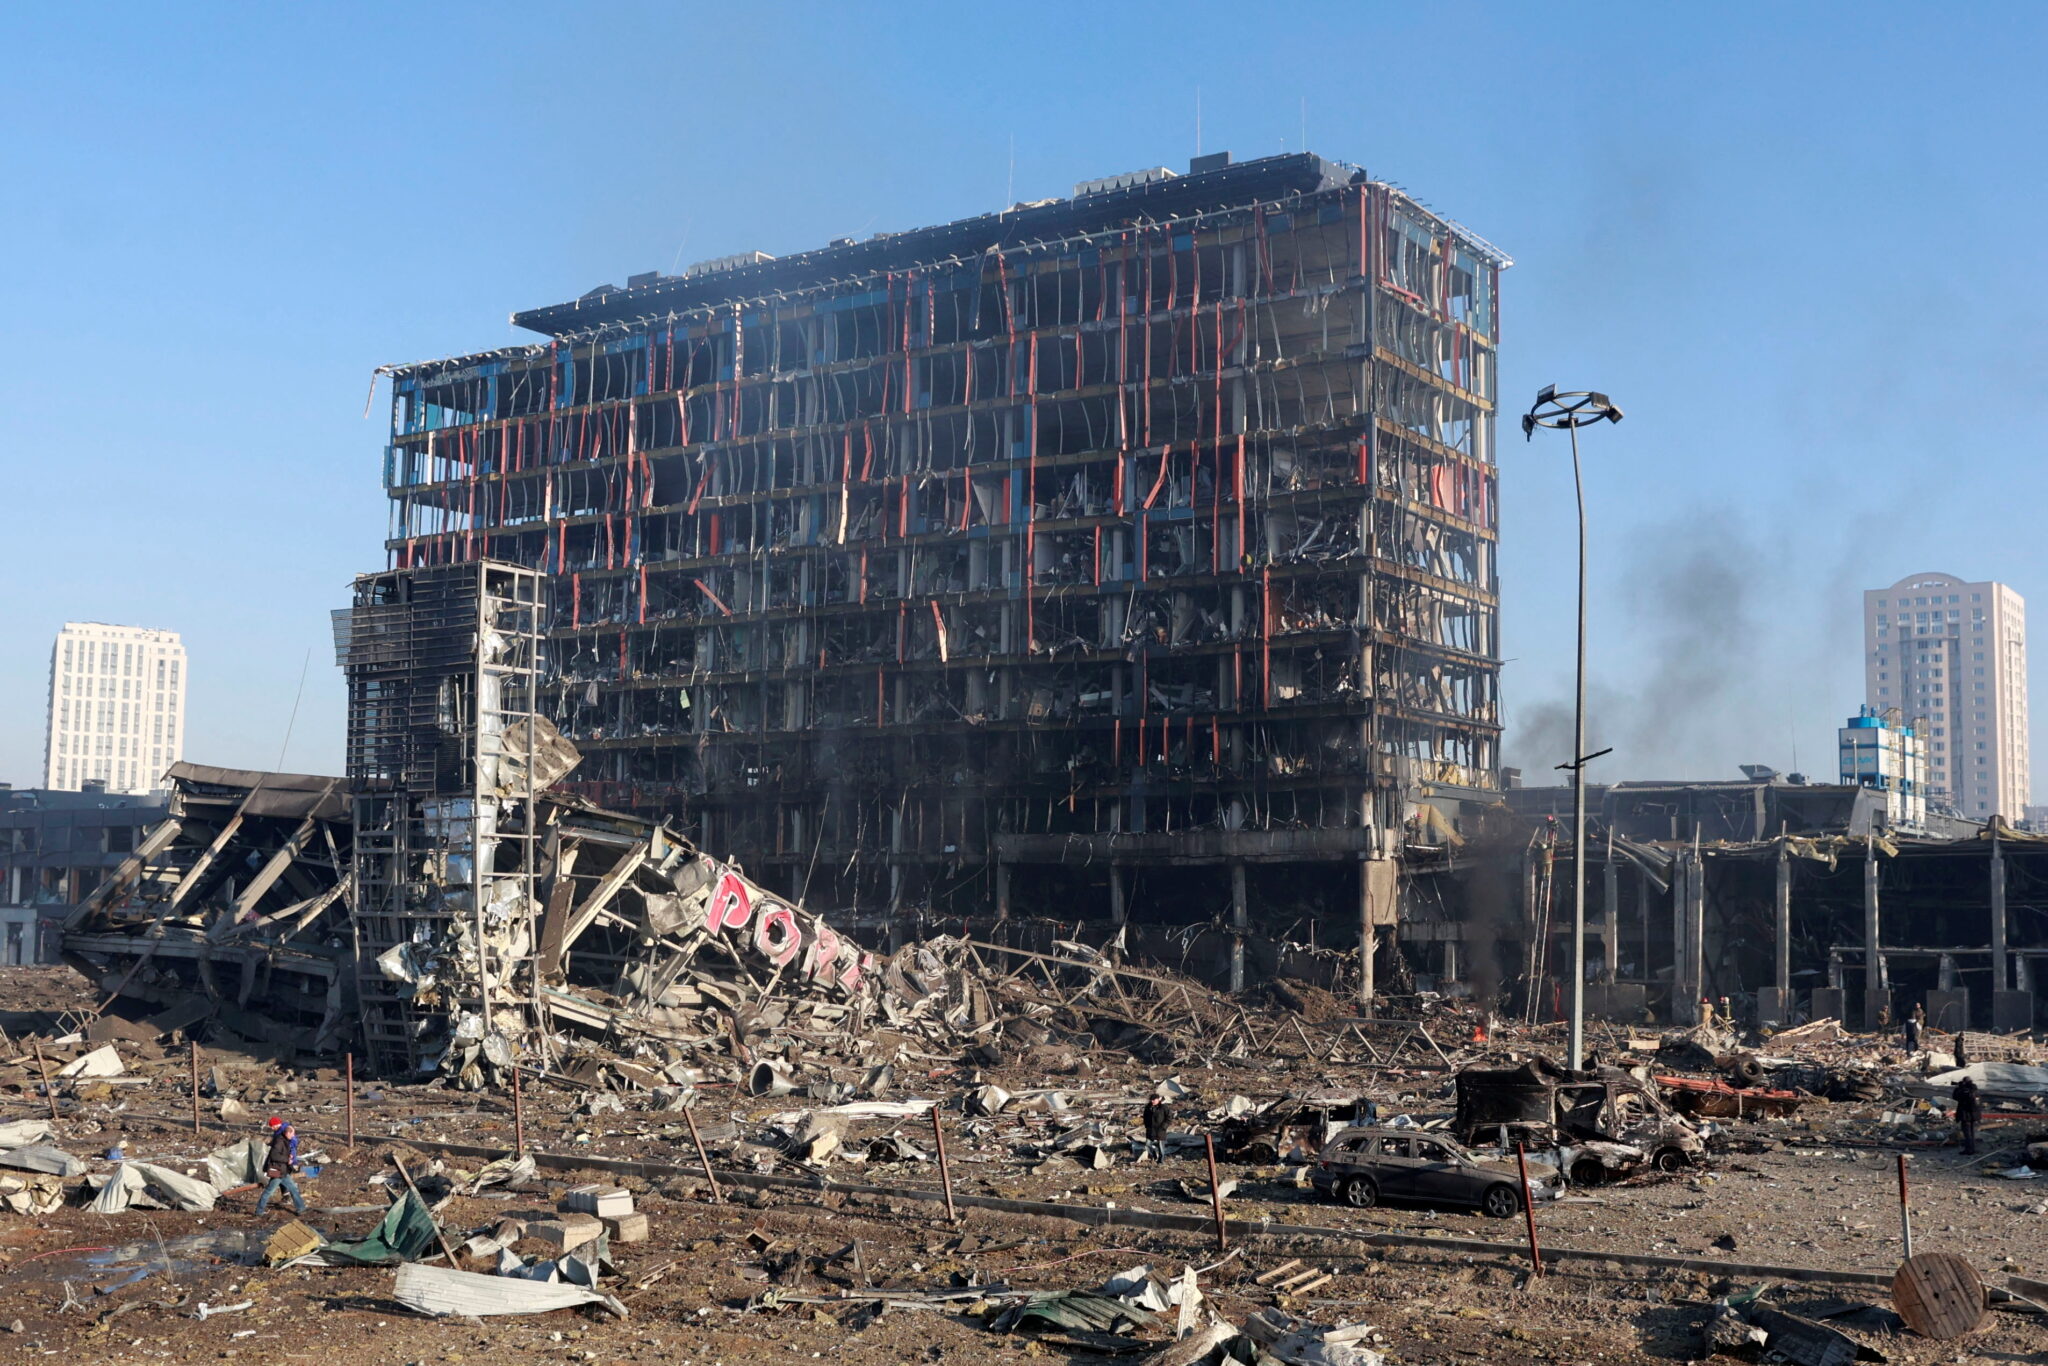 Разрушенный ТЦ в Подольском районе Киева. Фото REUTERS/Serhii Nuzhnenko/Scanpix/LETA